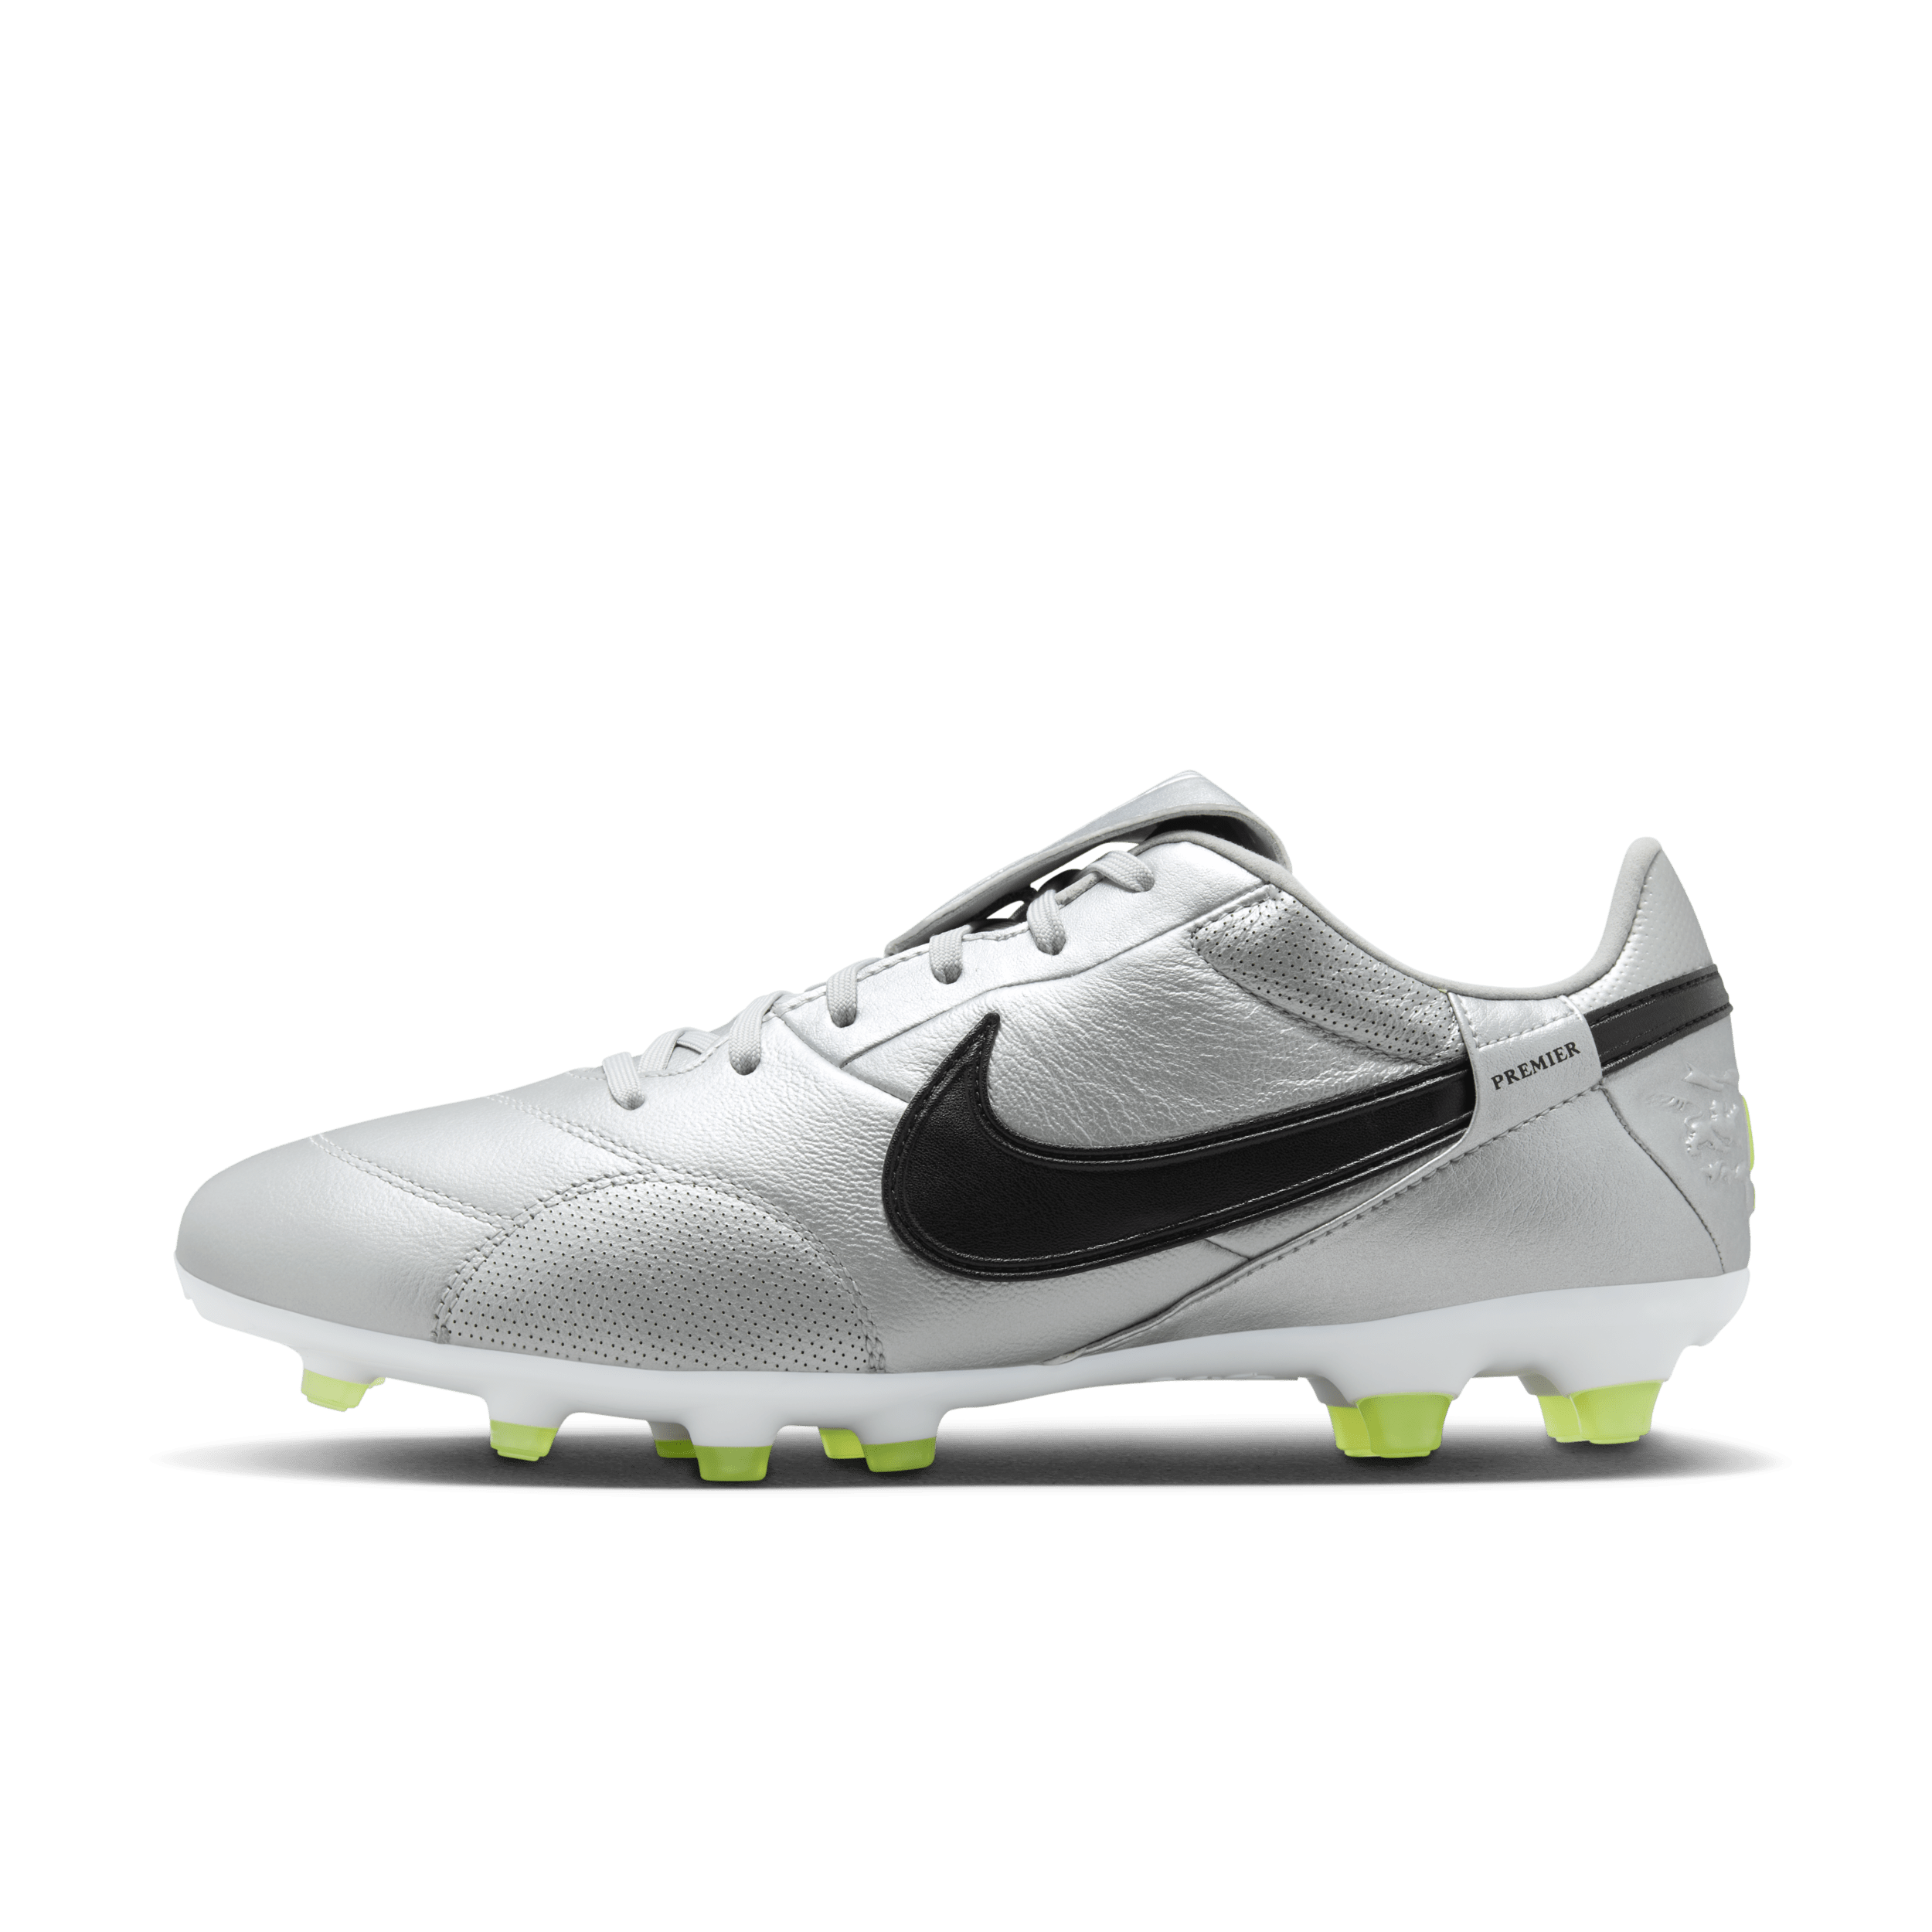 NikePremier 3-fodboldstøvler til græs - grå